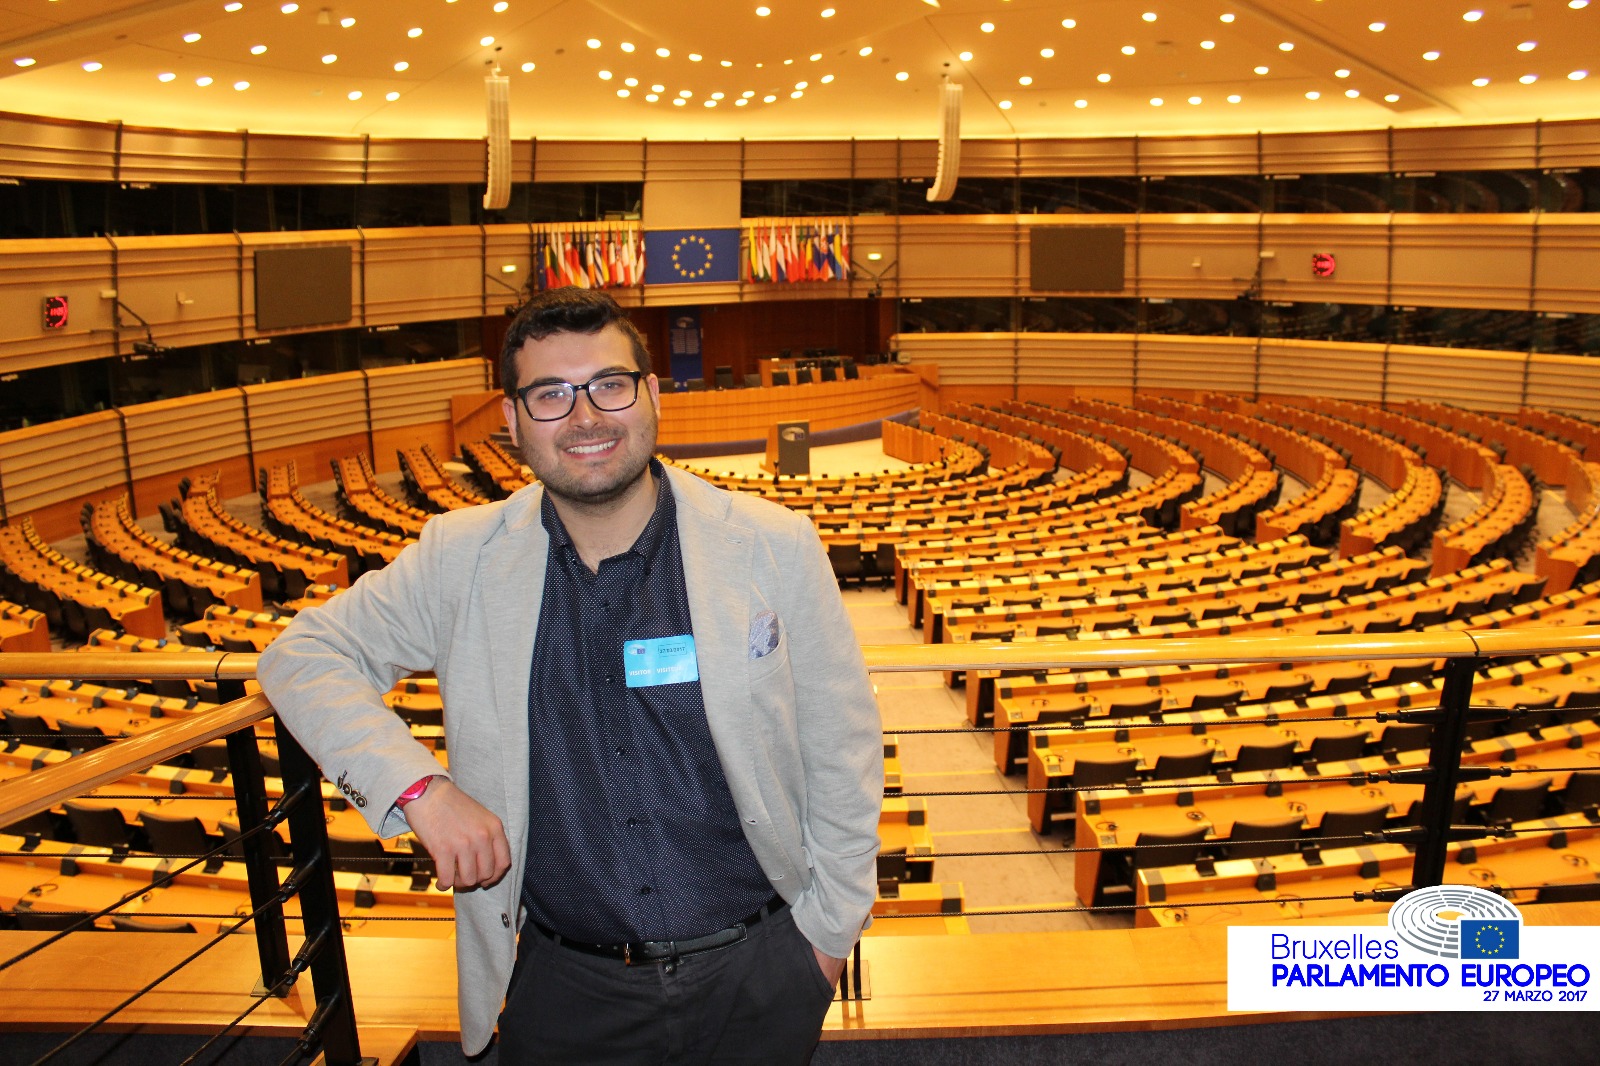 Melcore Parlamento Europeo